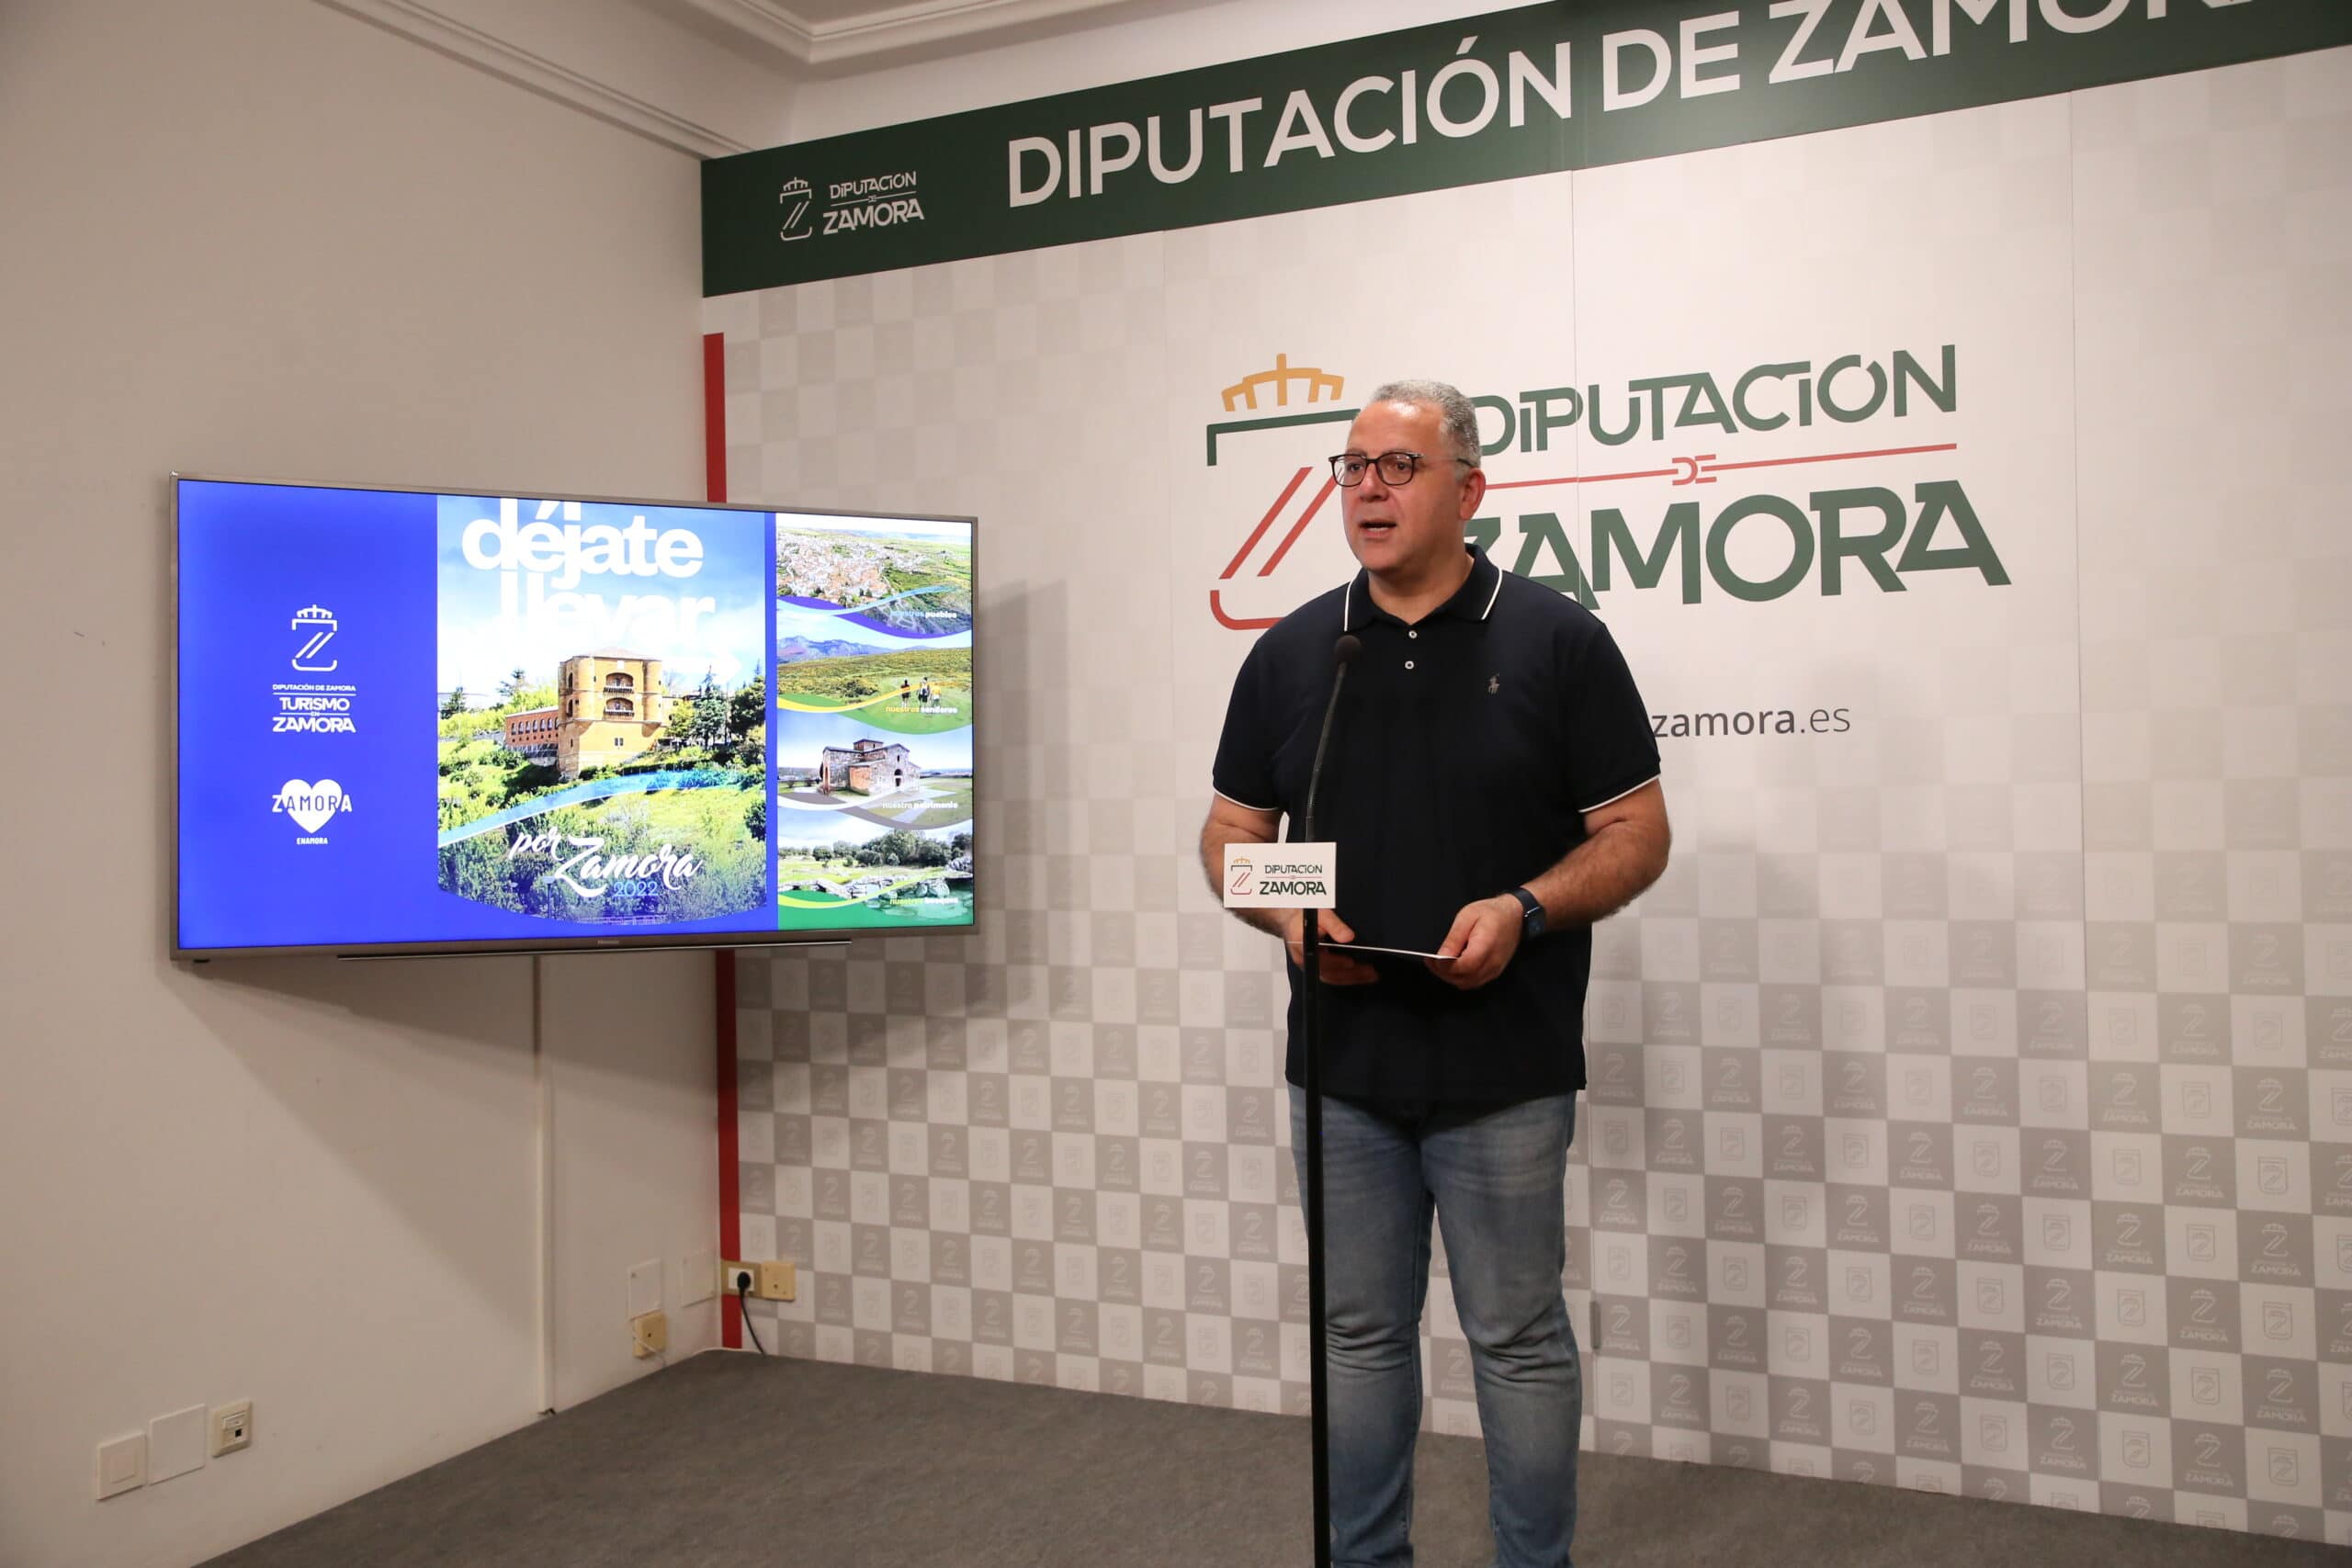 La Diputación de Zamora invita a «dejarte llevar» por la provincia